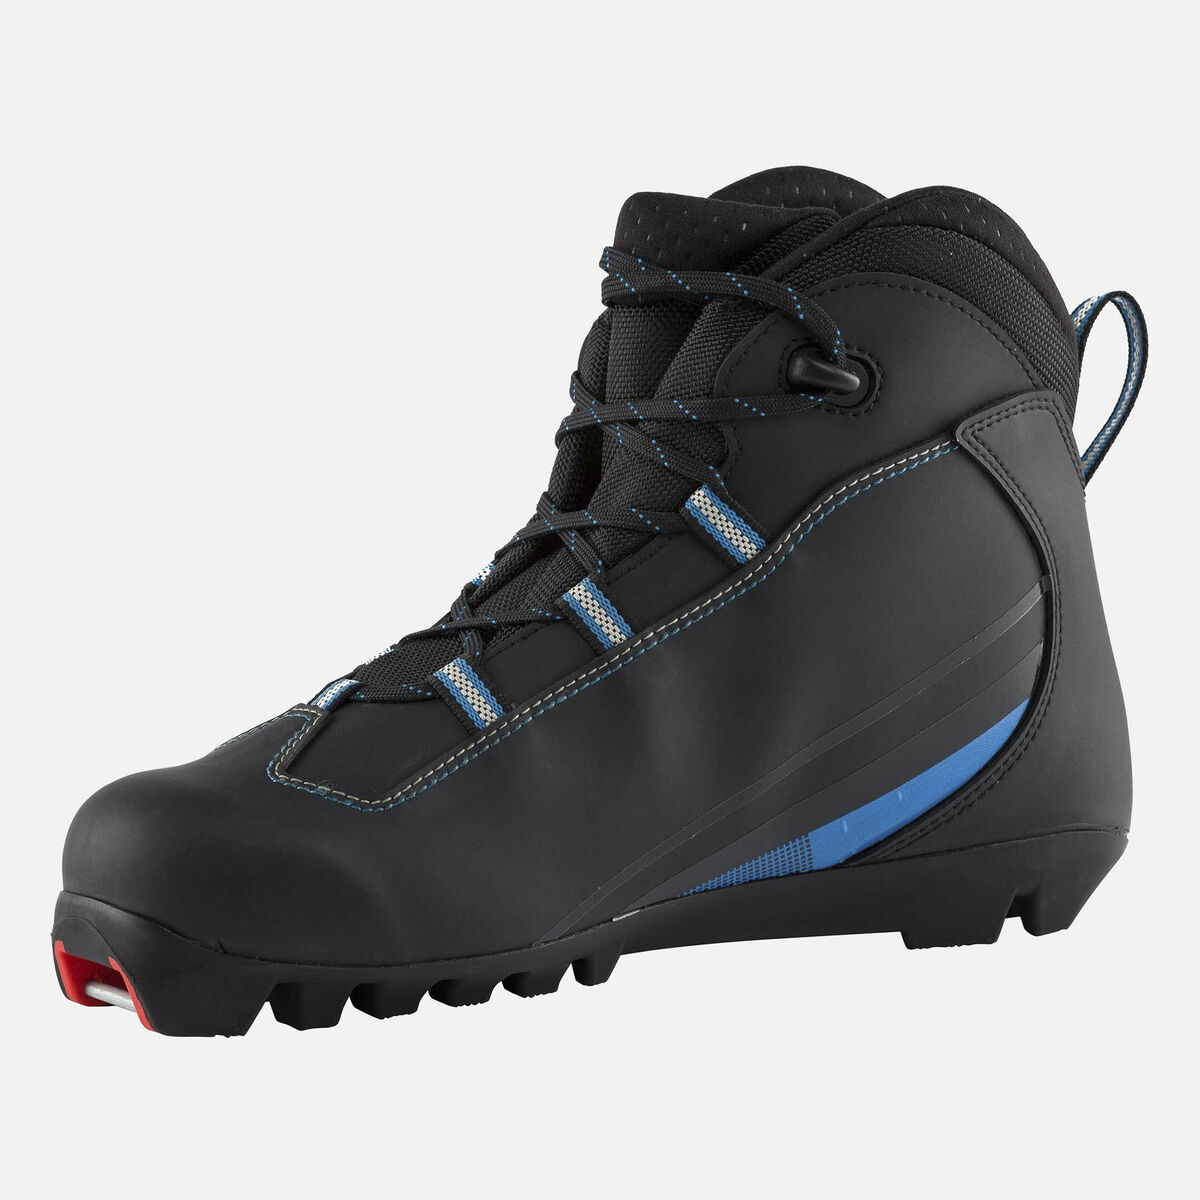 Chaussures de ski nordique Touring Femme Boots X-1 Fw